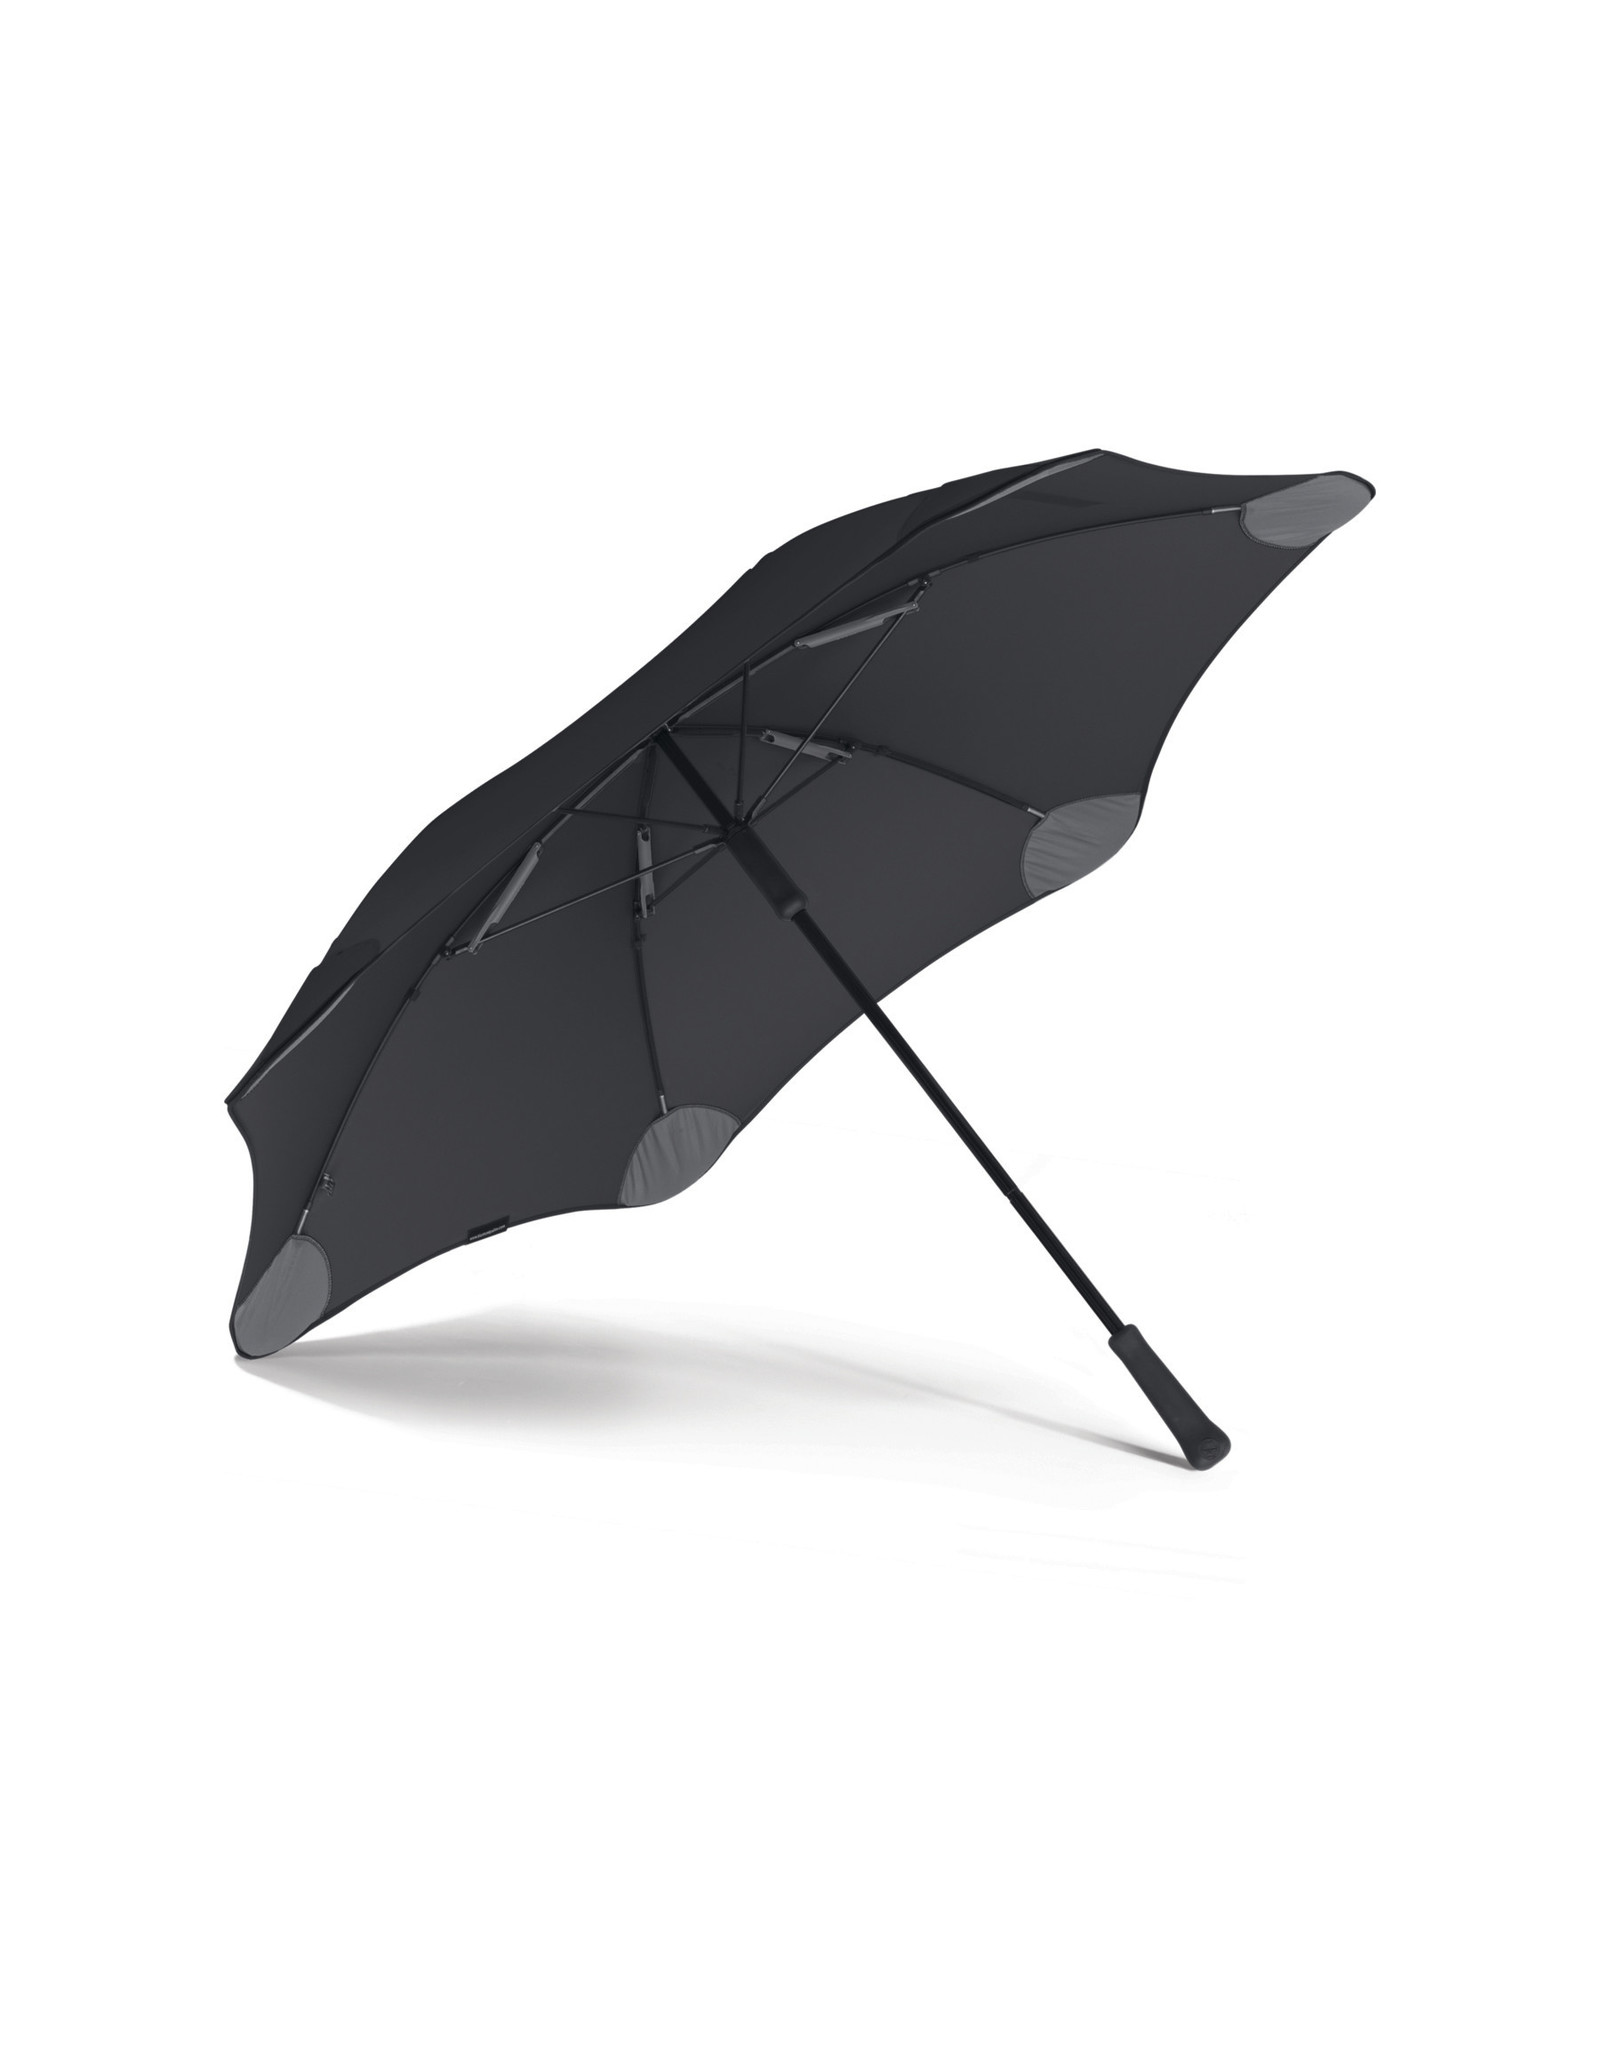 Blunt Classic Umbrella, Black